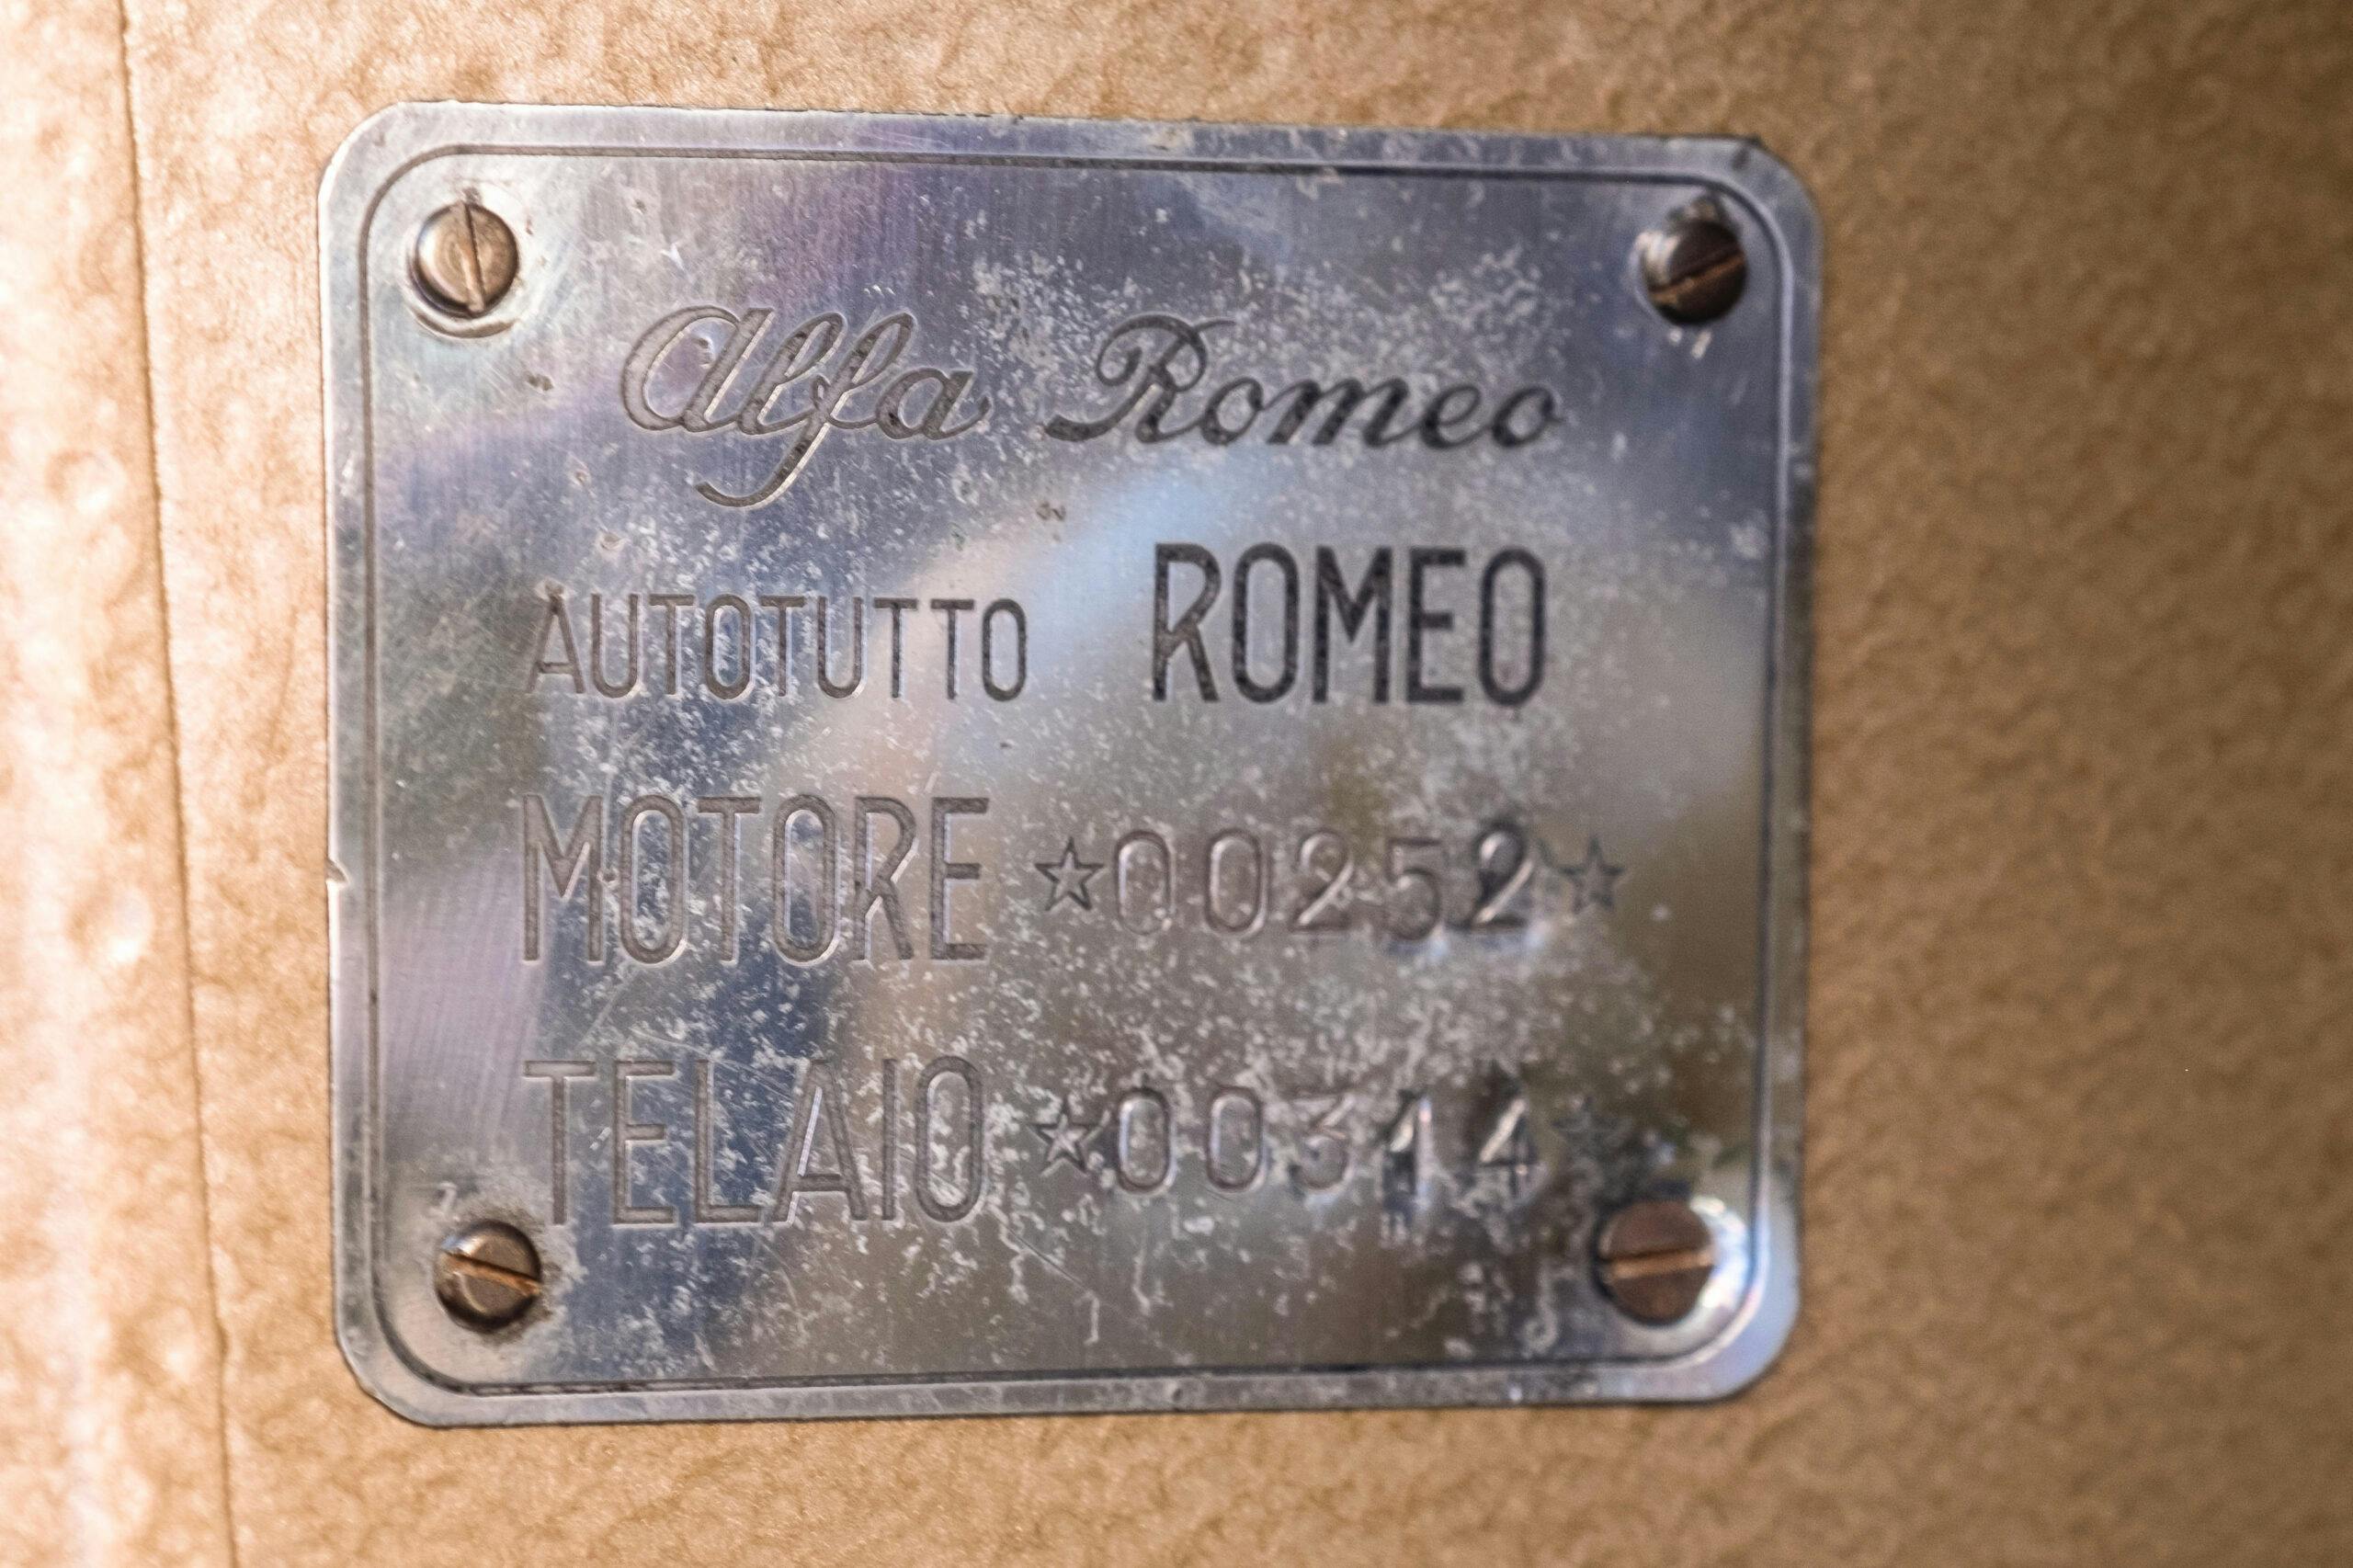 1955 Alfa Romeo T10 Autotutto Romeo Campervan model info plate